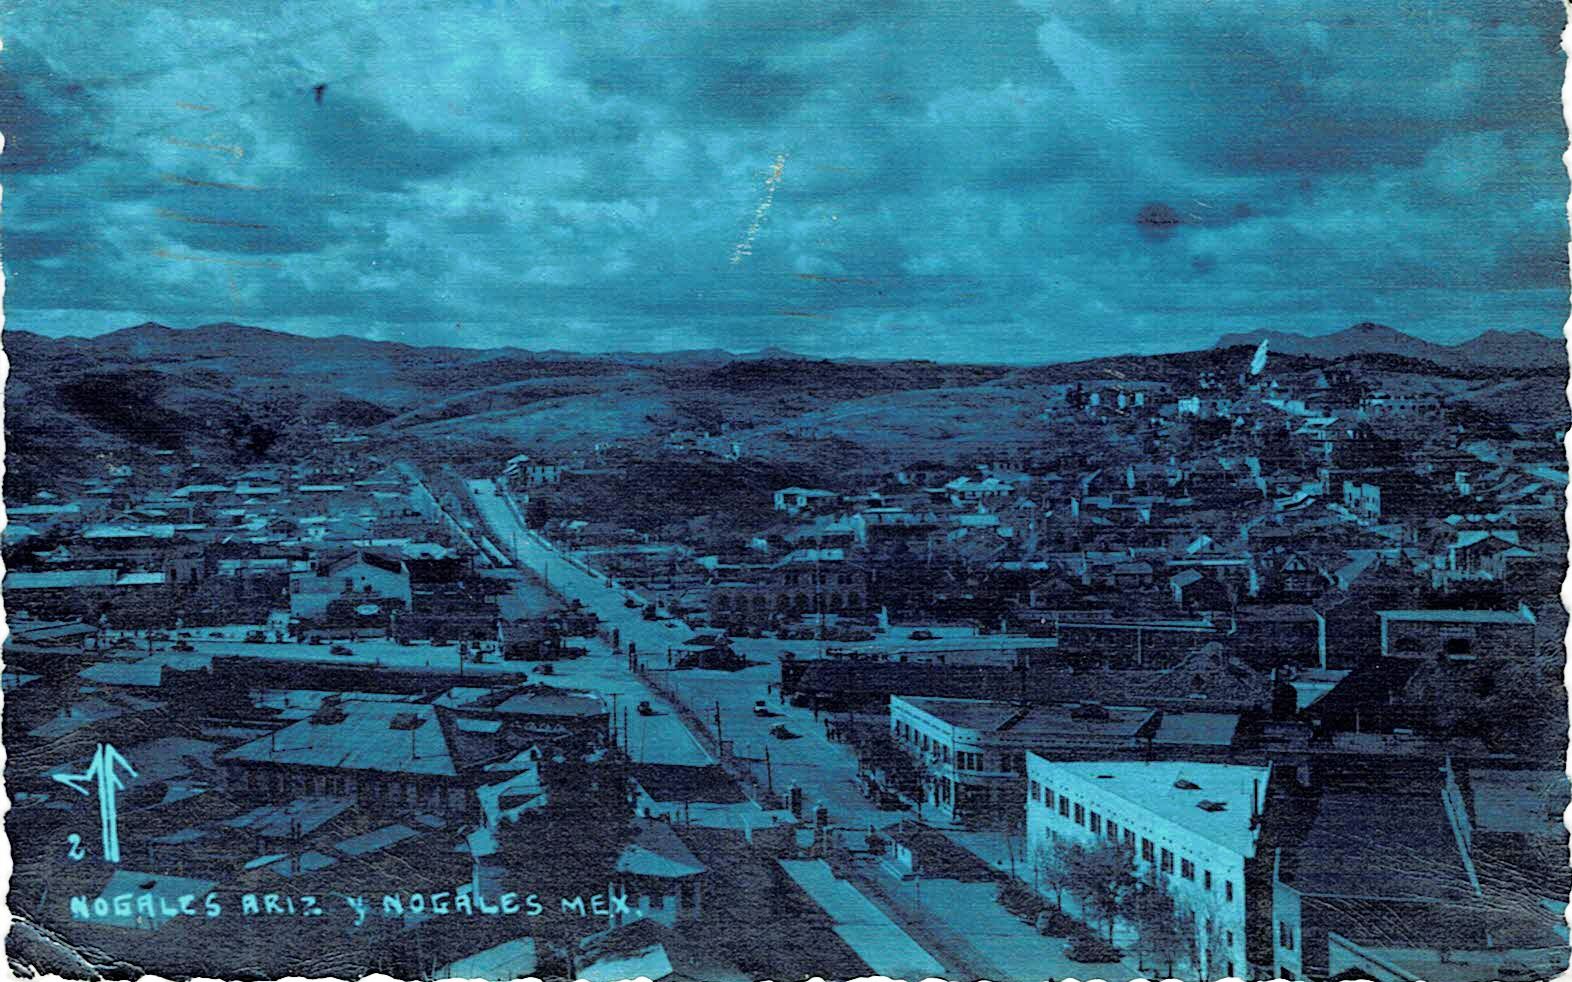 Nogales Arizona y Nogales Mex. Postcard 1945